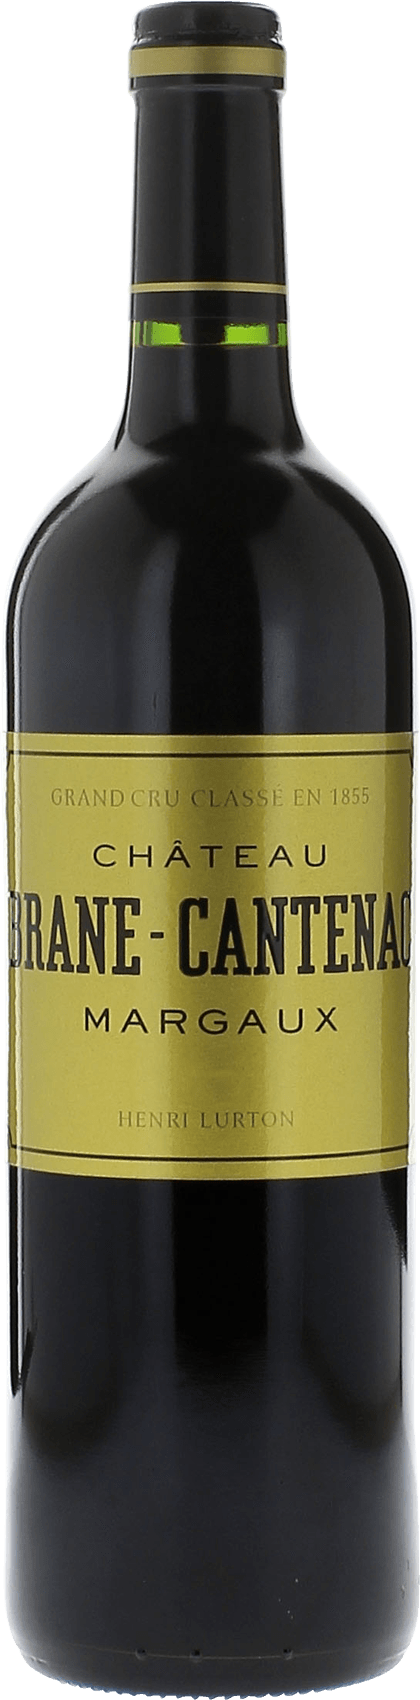 Brane cantenac 2021 2me Grand cru class Margaux, Bordeaux rouge